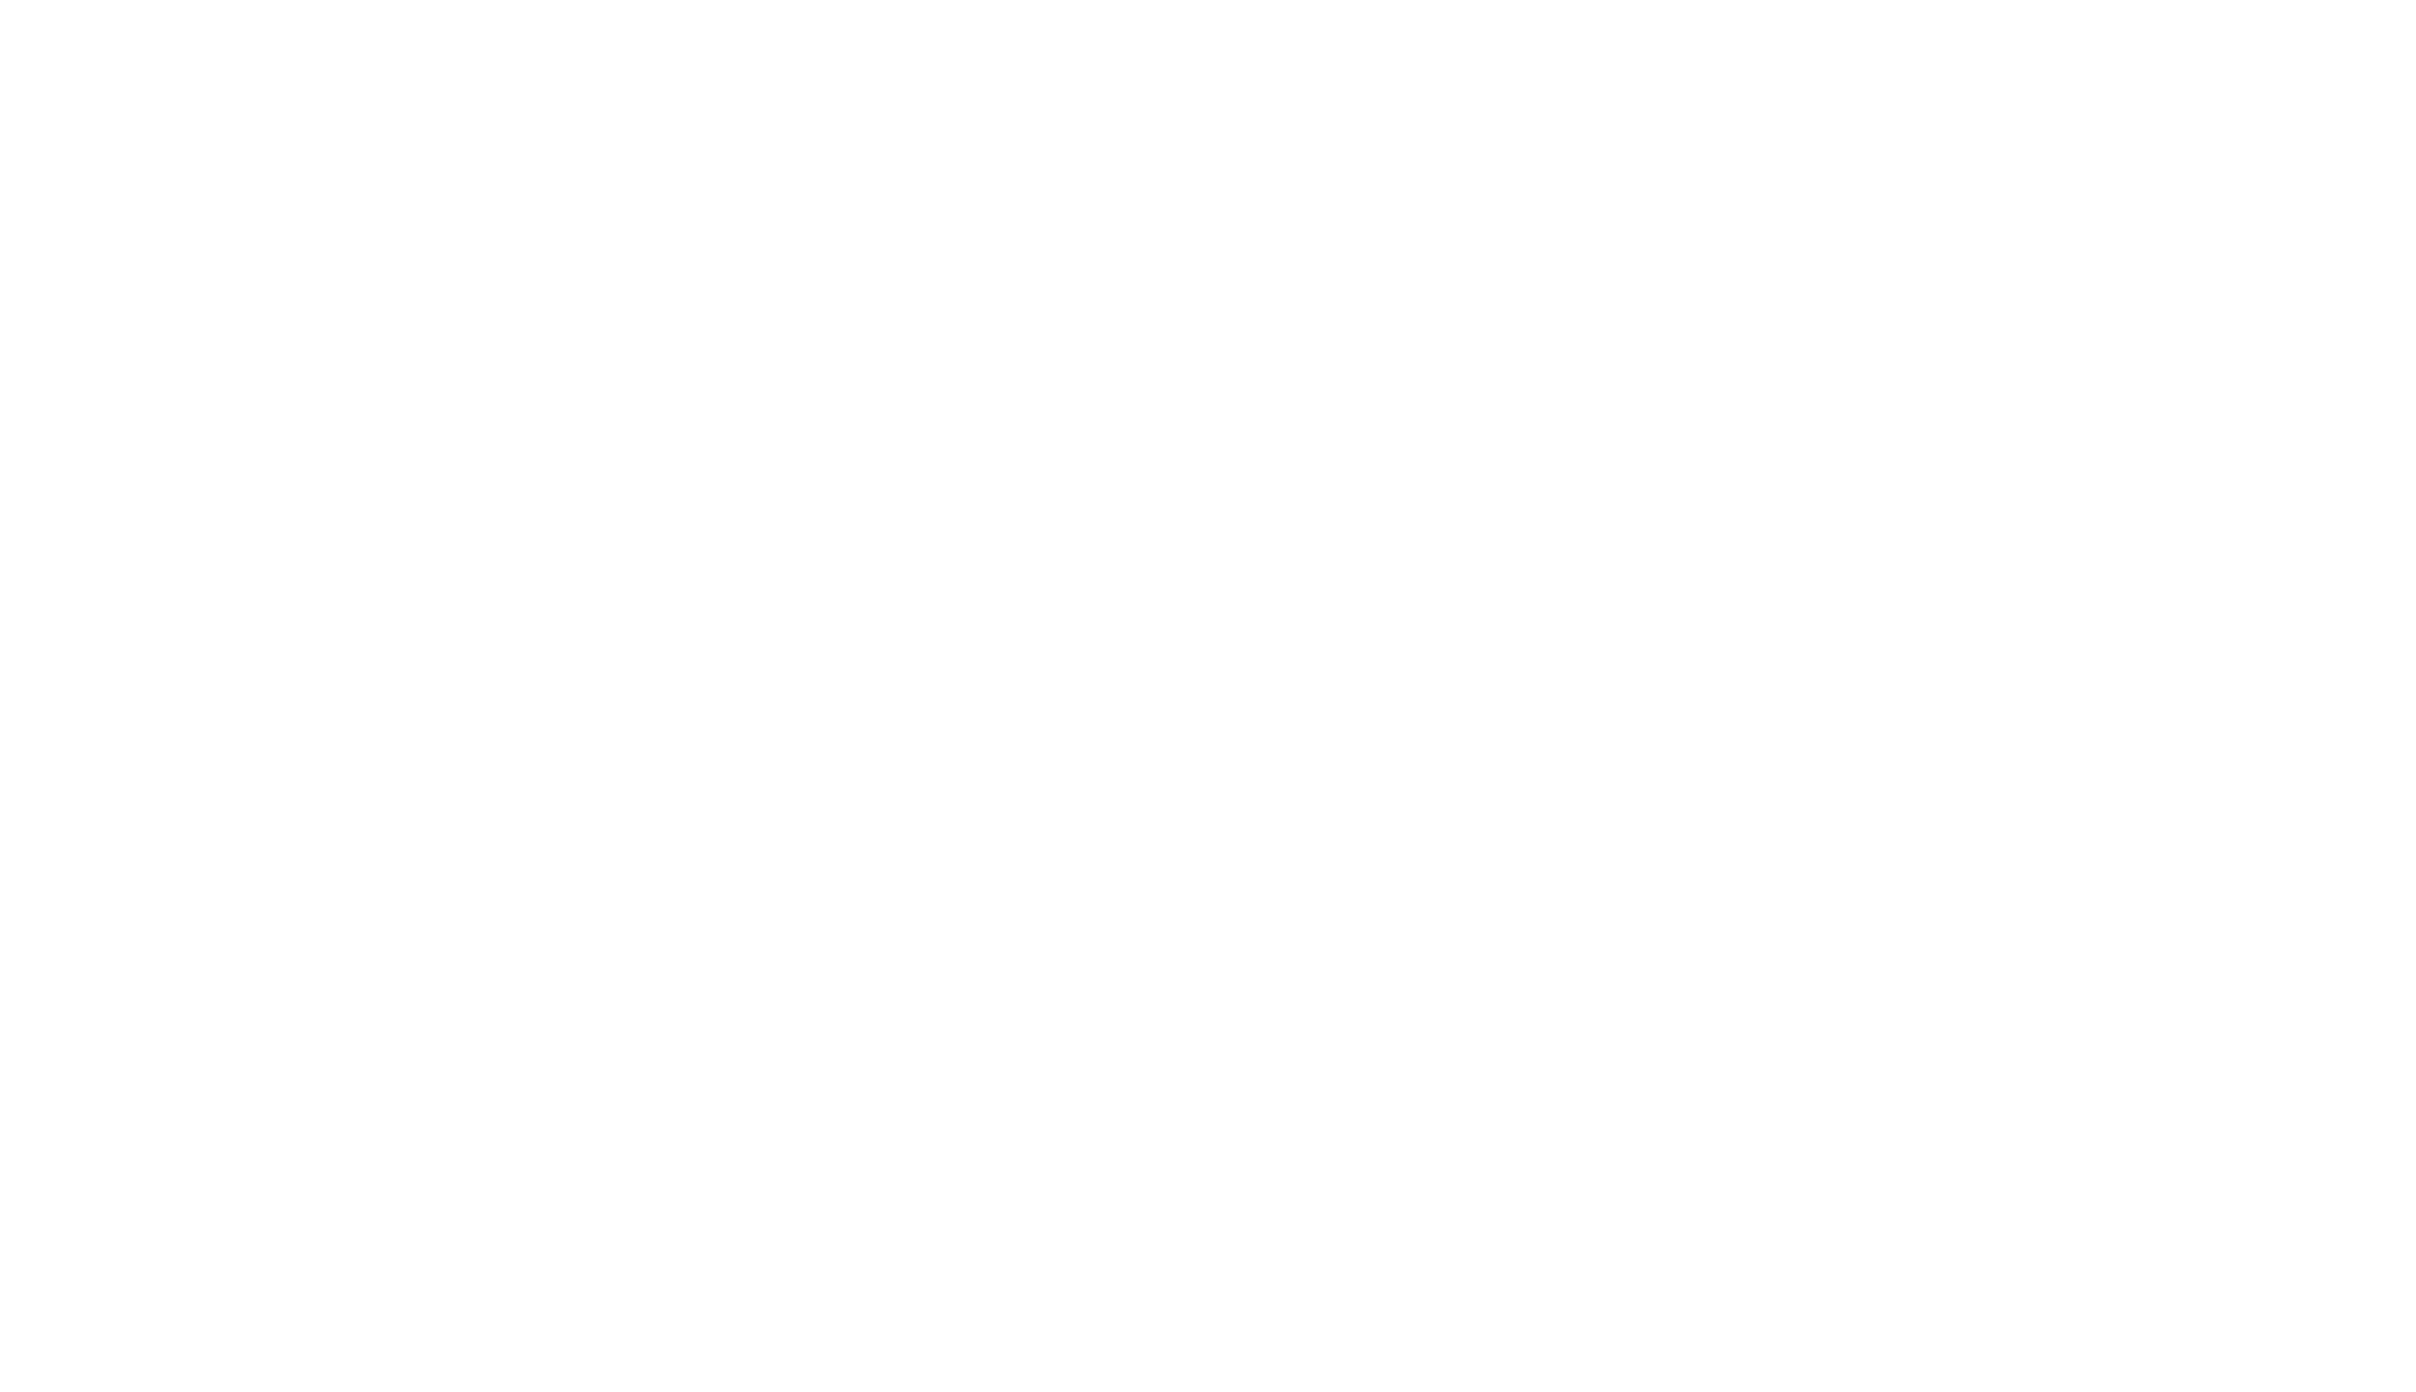 Liga Panameña de Fútbol – LPF